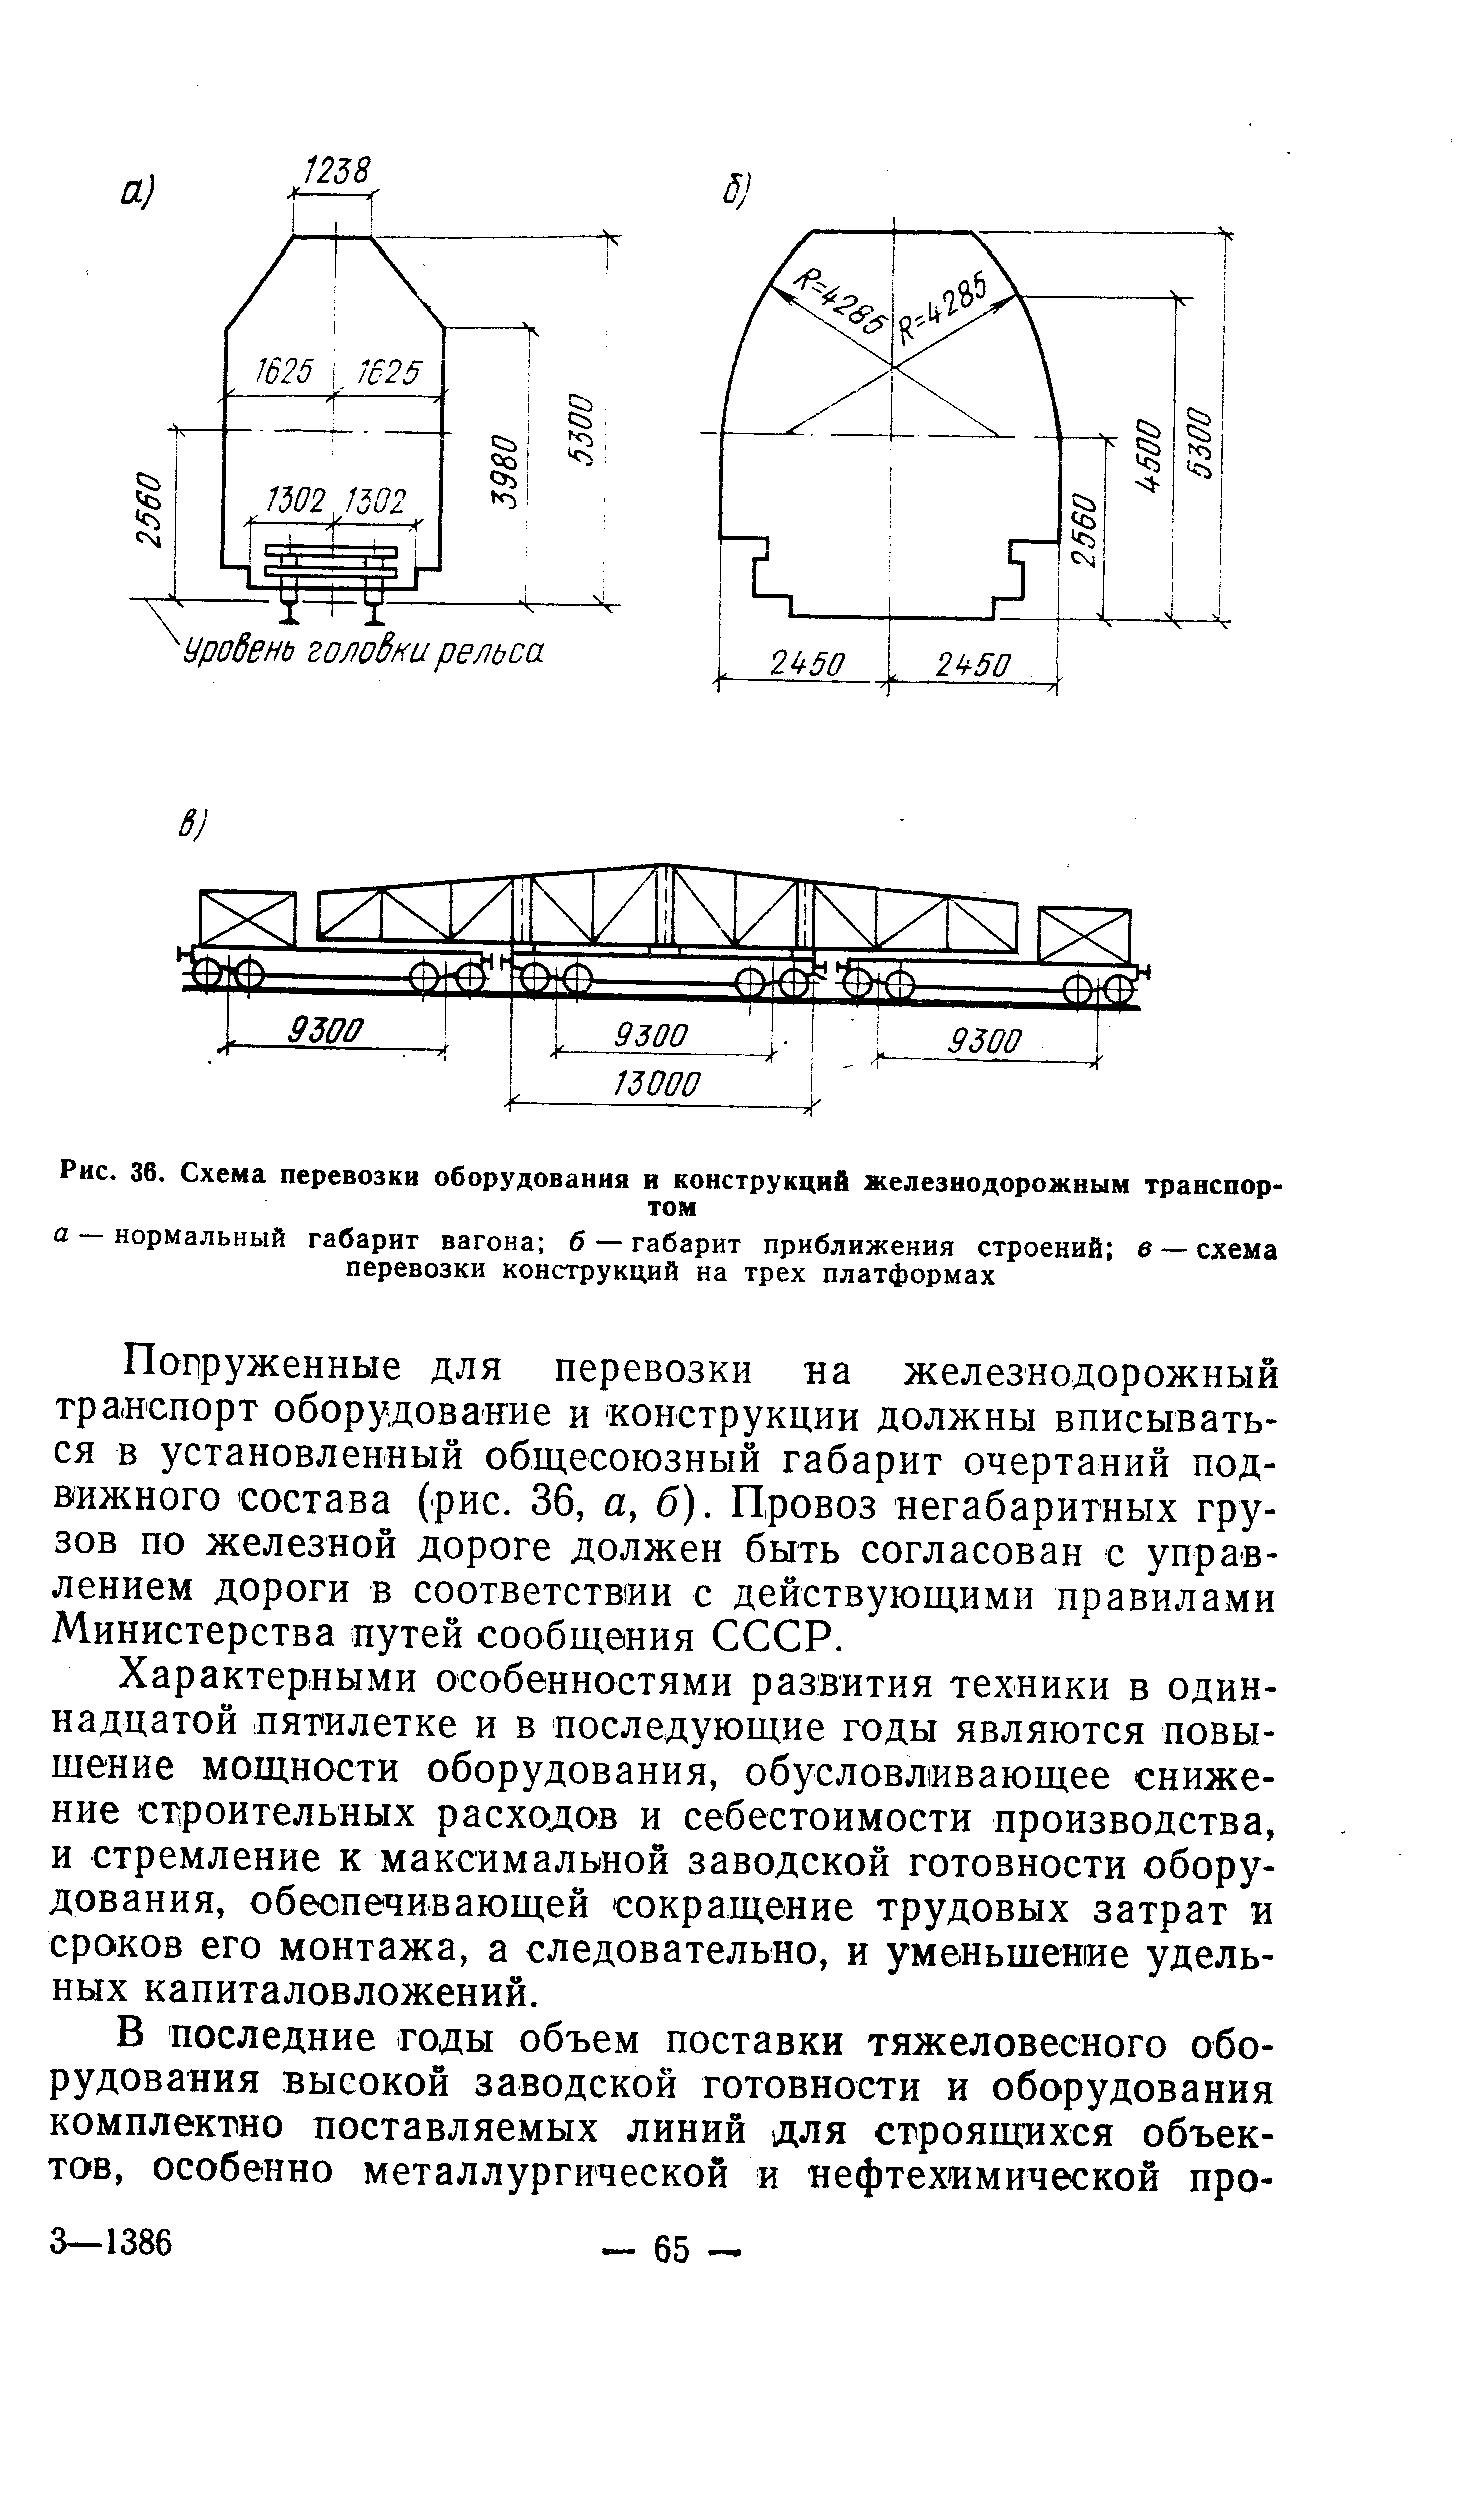 Рис. 36. Схема перевозки оборудования в конструкций железнодорожным транспортом
